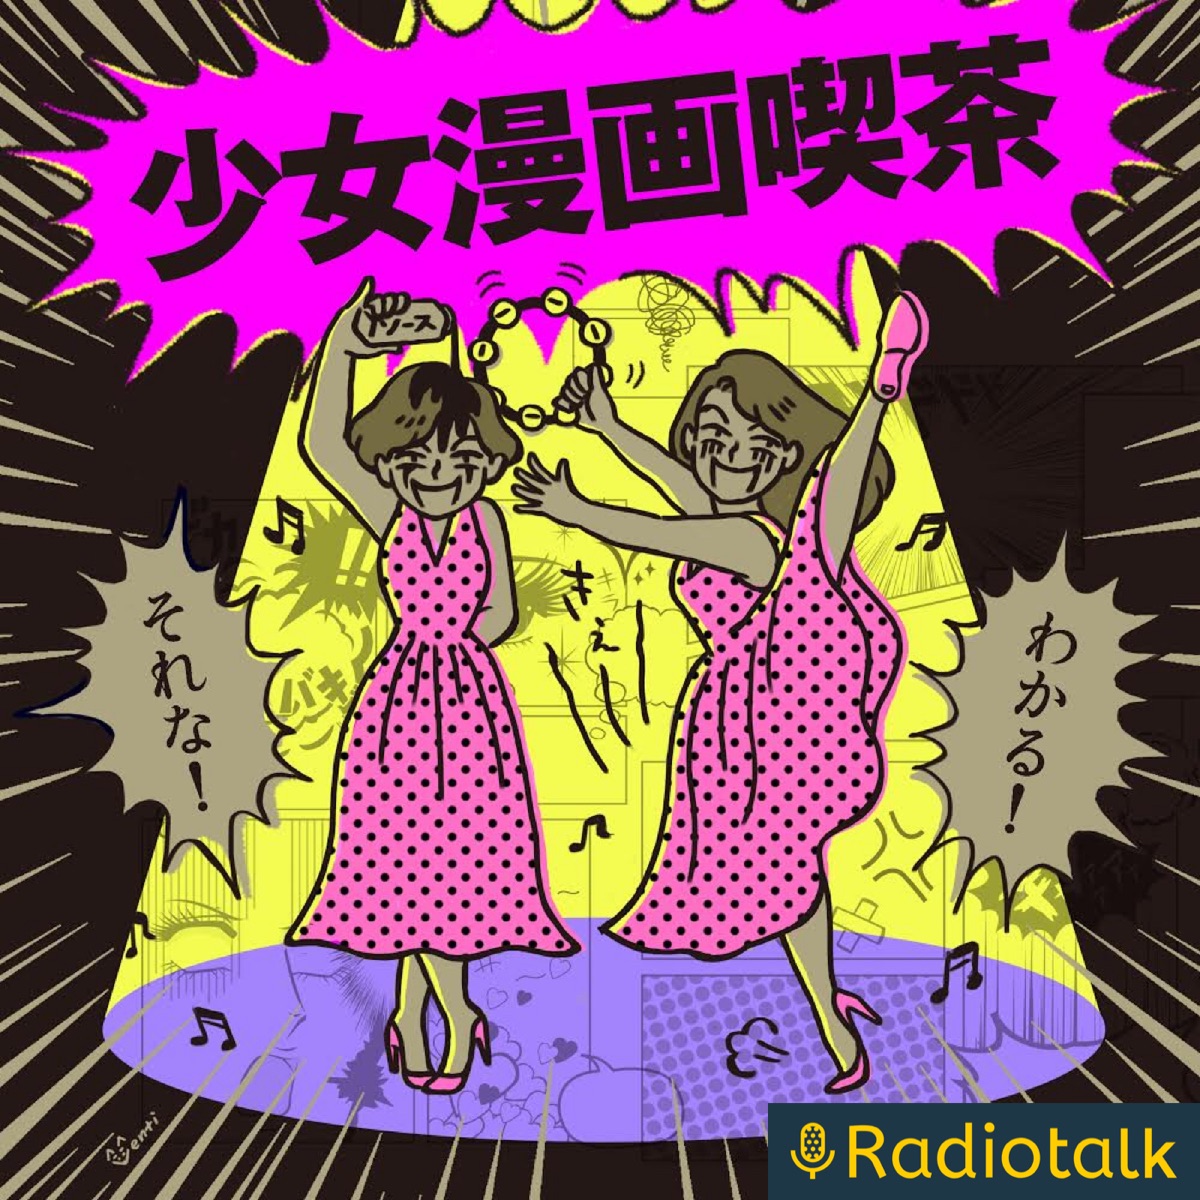 少女漫画喫茶 Podcast Podtail